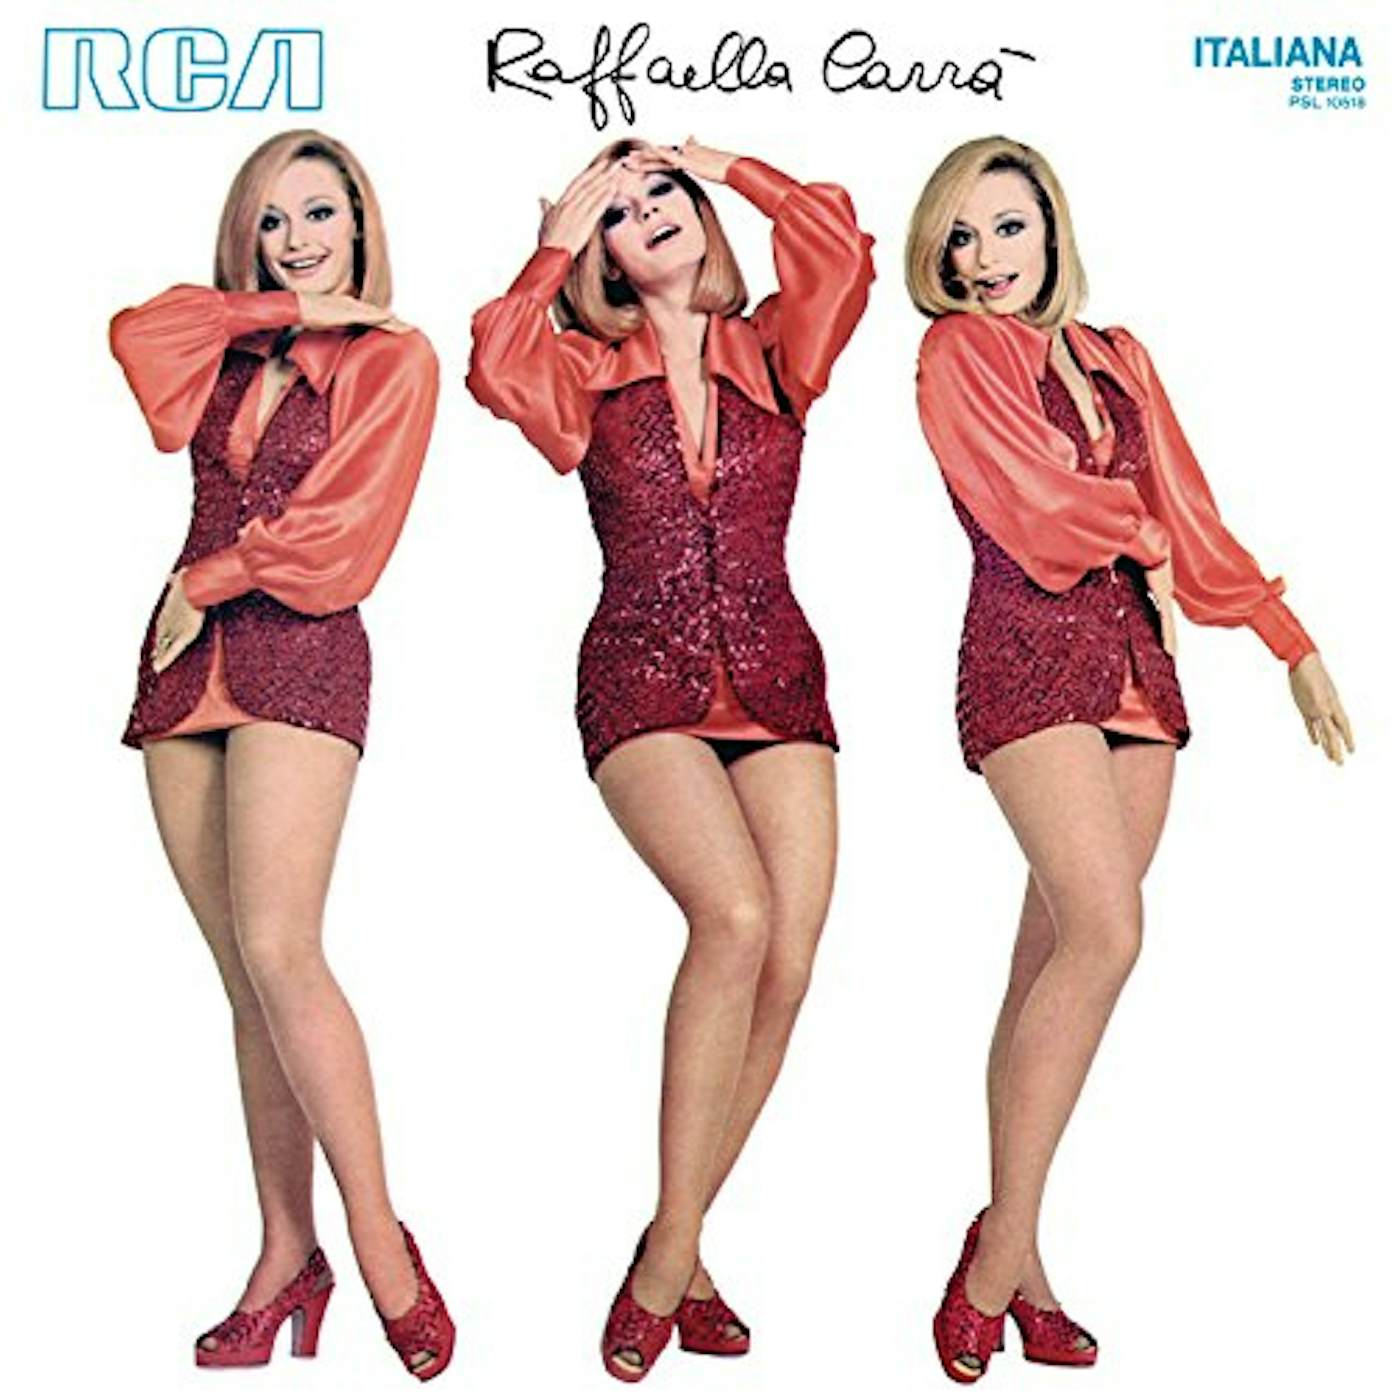 Raffaella Carrà Vinyl Record